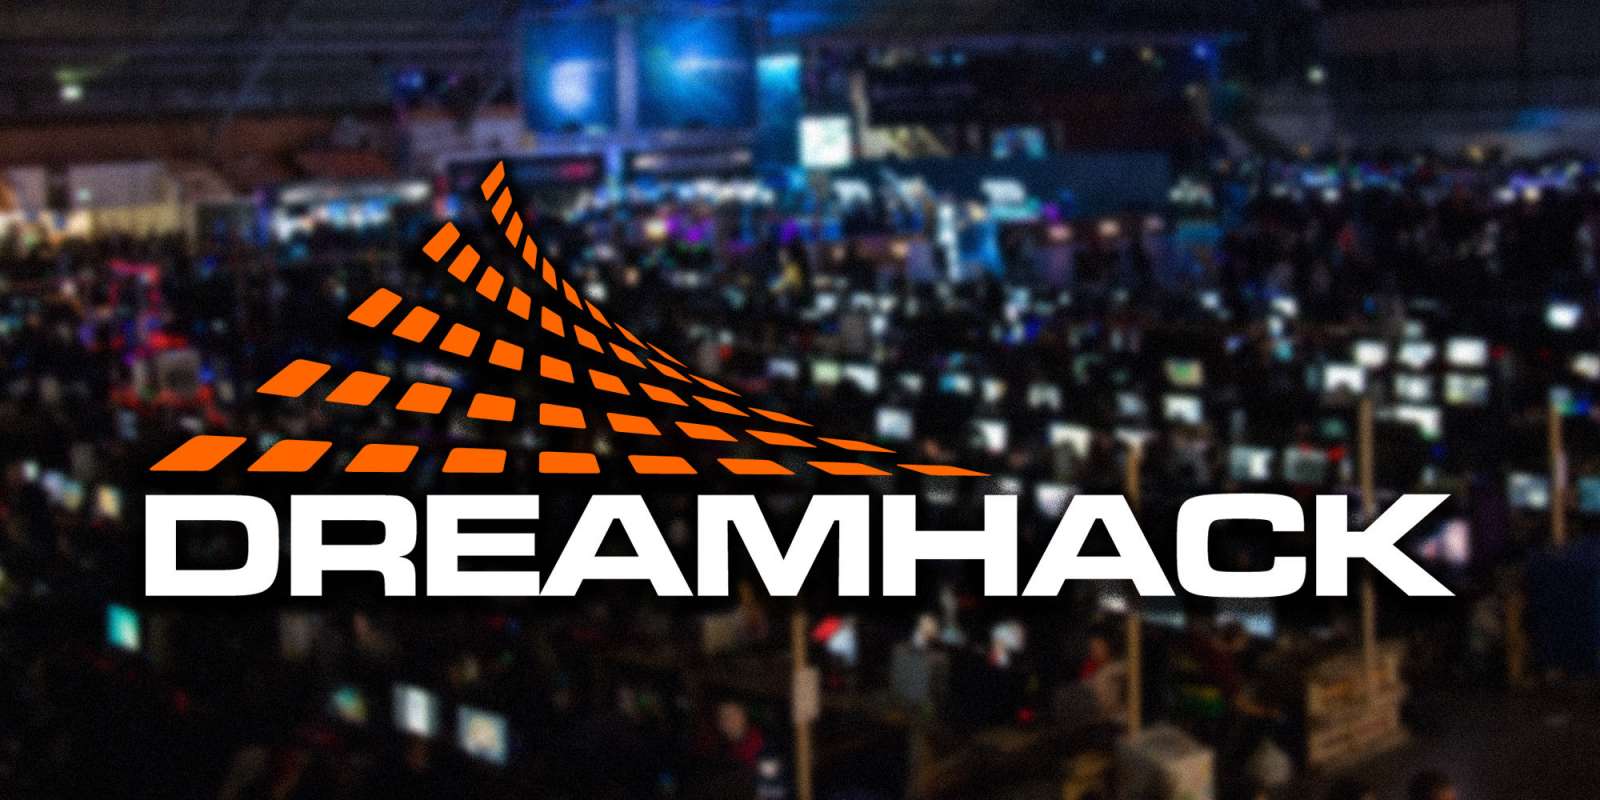 Dreamhack is back in Atlanta this weekend